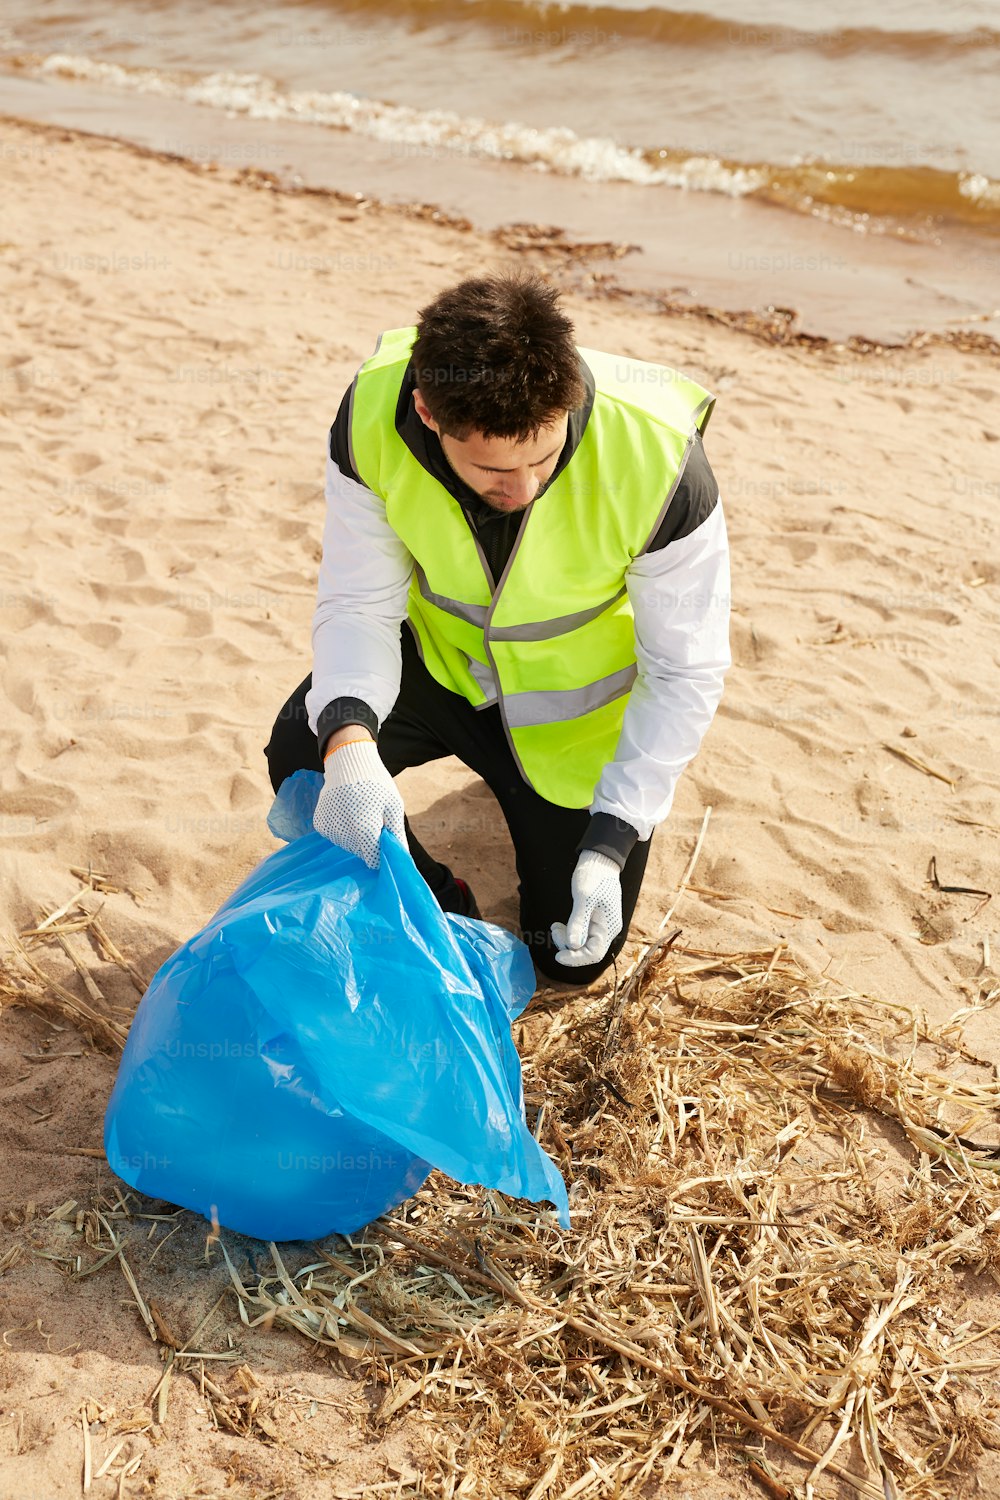 Jovem voluntário contemporâneo em uniforme recolhendo resíduos enquanto trabalha na praia de areia